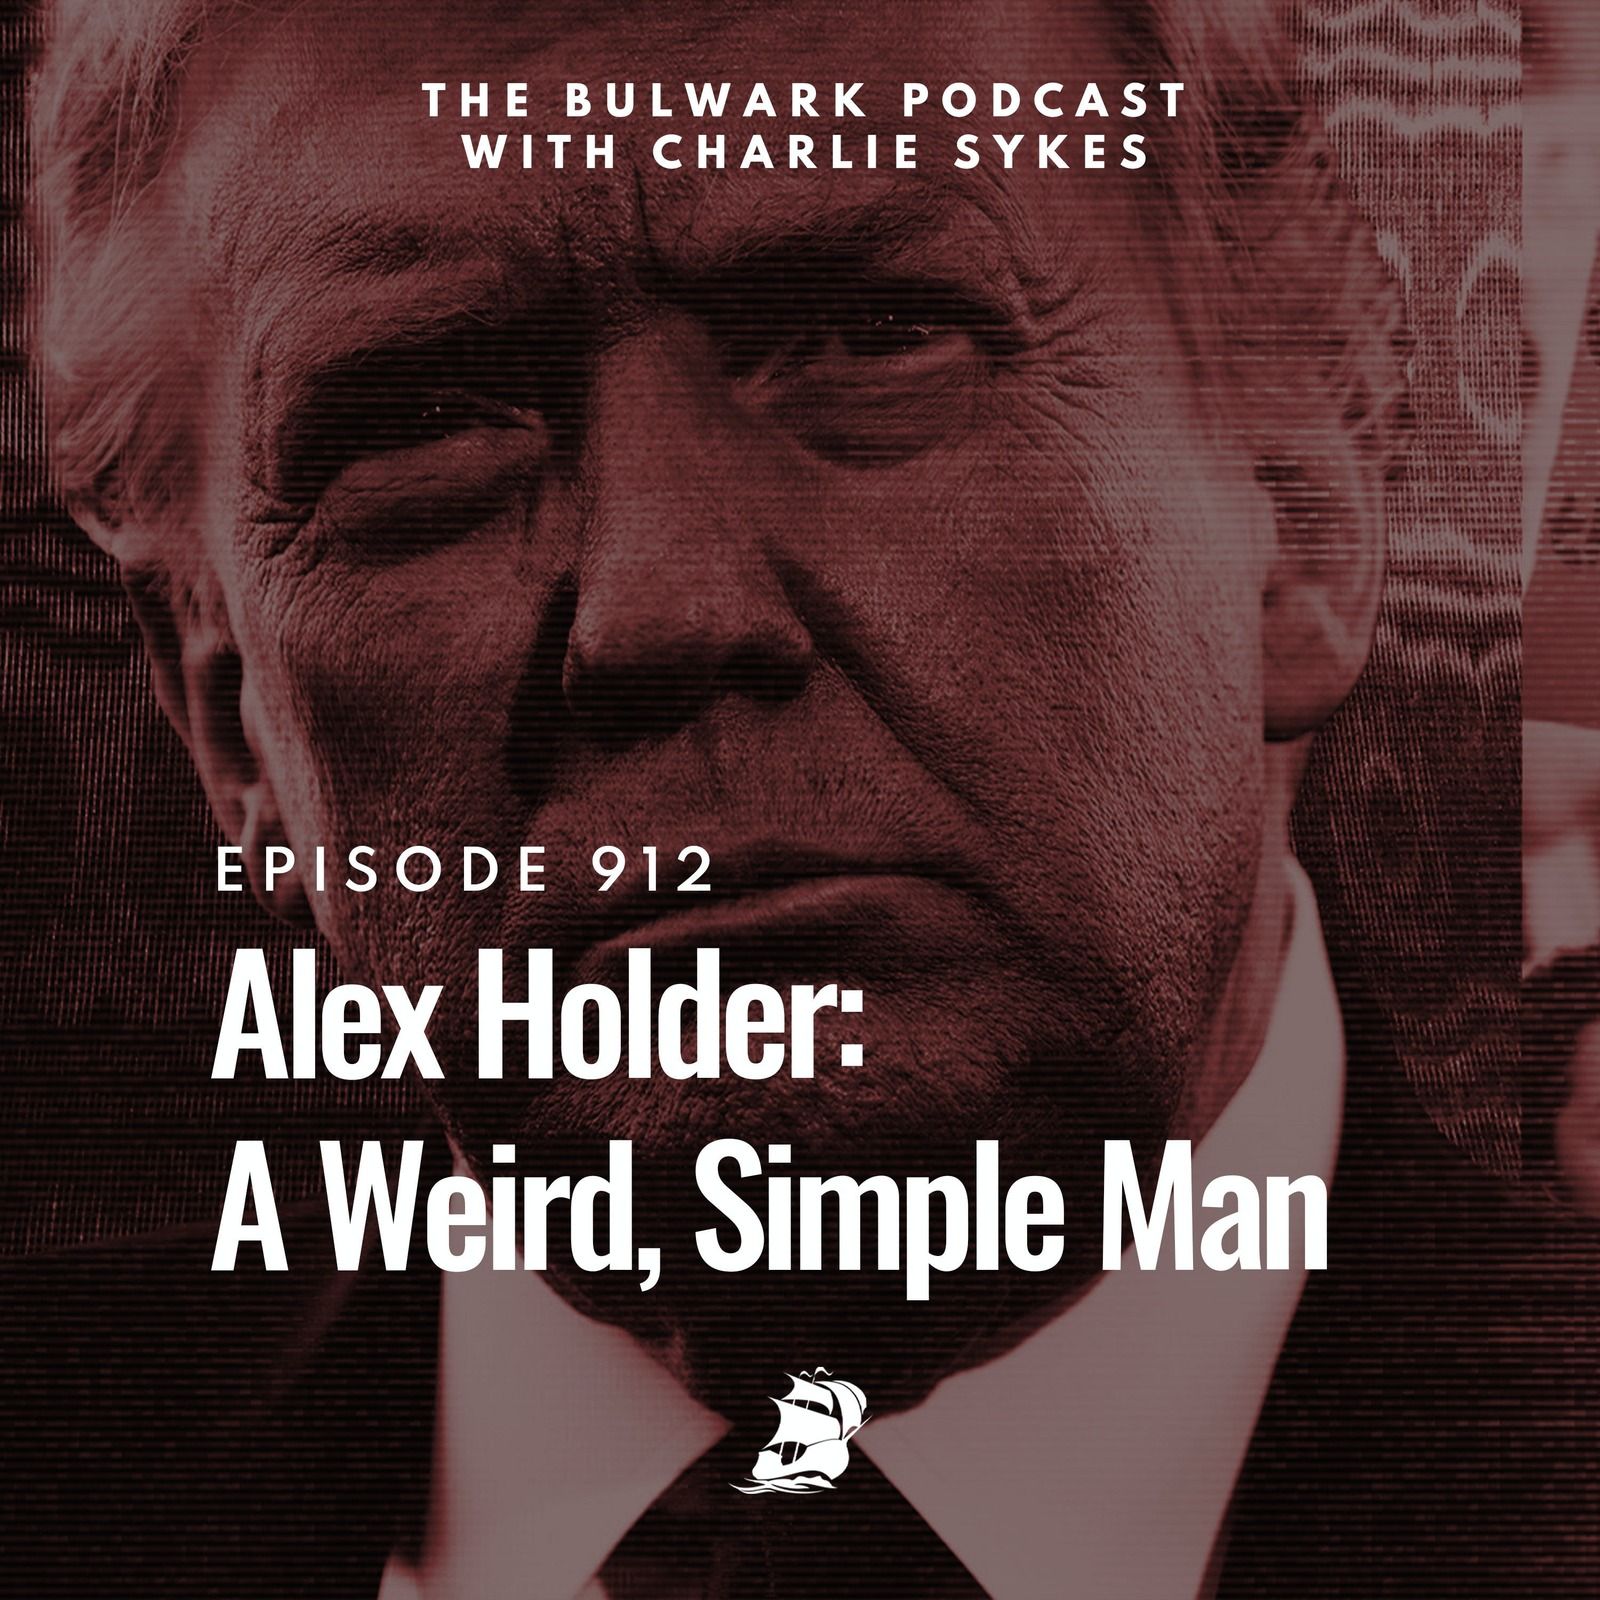 Alex Holder: A Weird, Simple Man by The Bulwark Podcast